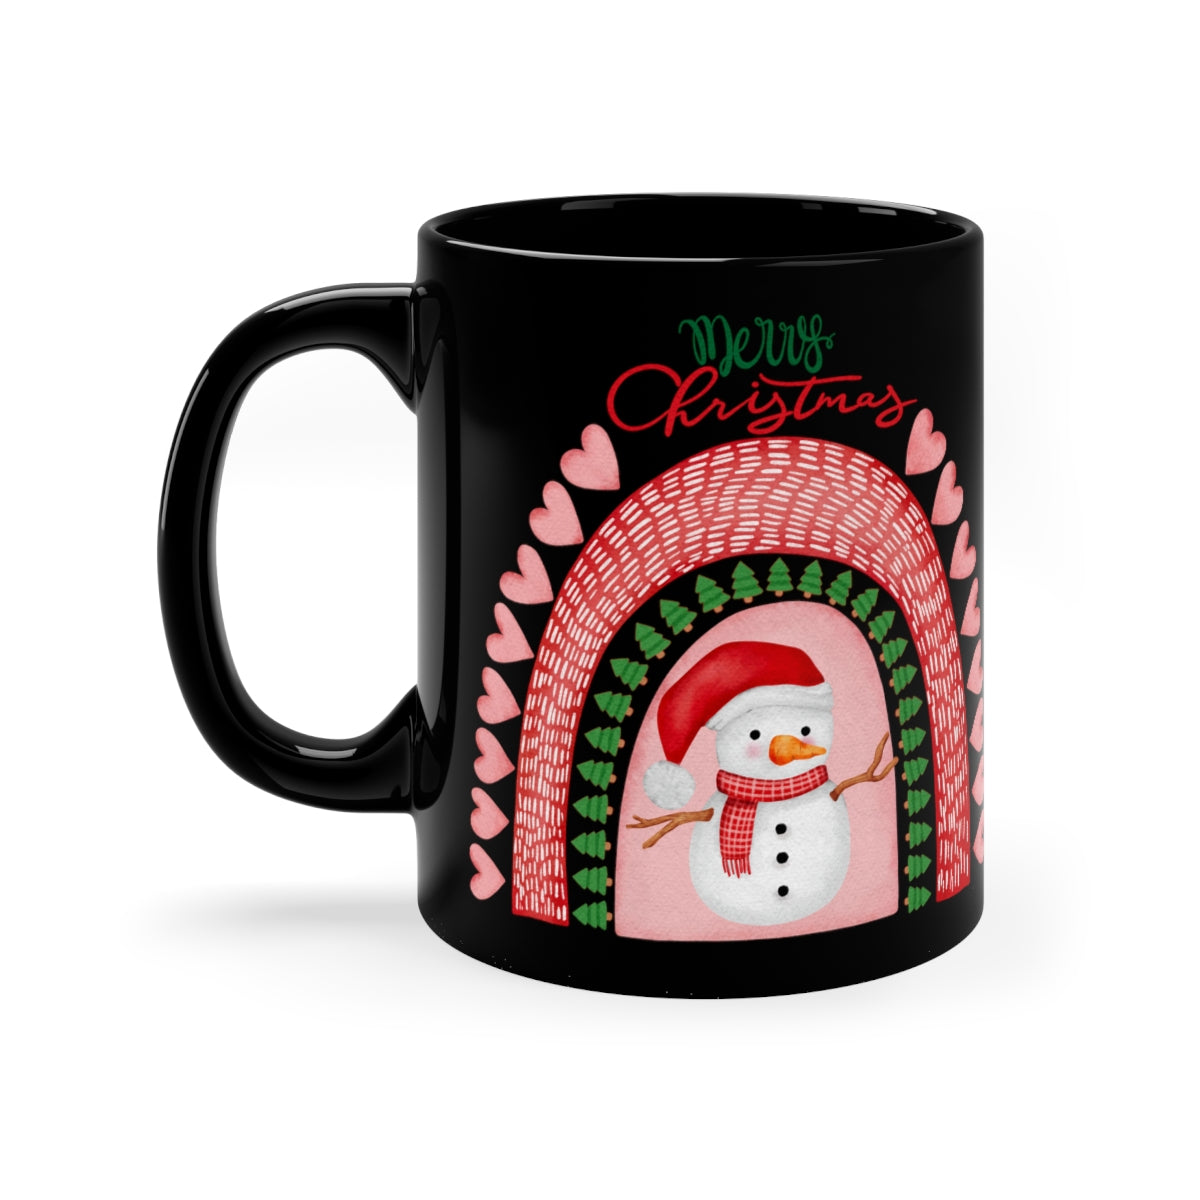 MERRY CHRISTMAS 11oz Black Mug, Christmas Gift, Holiday gift